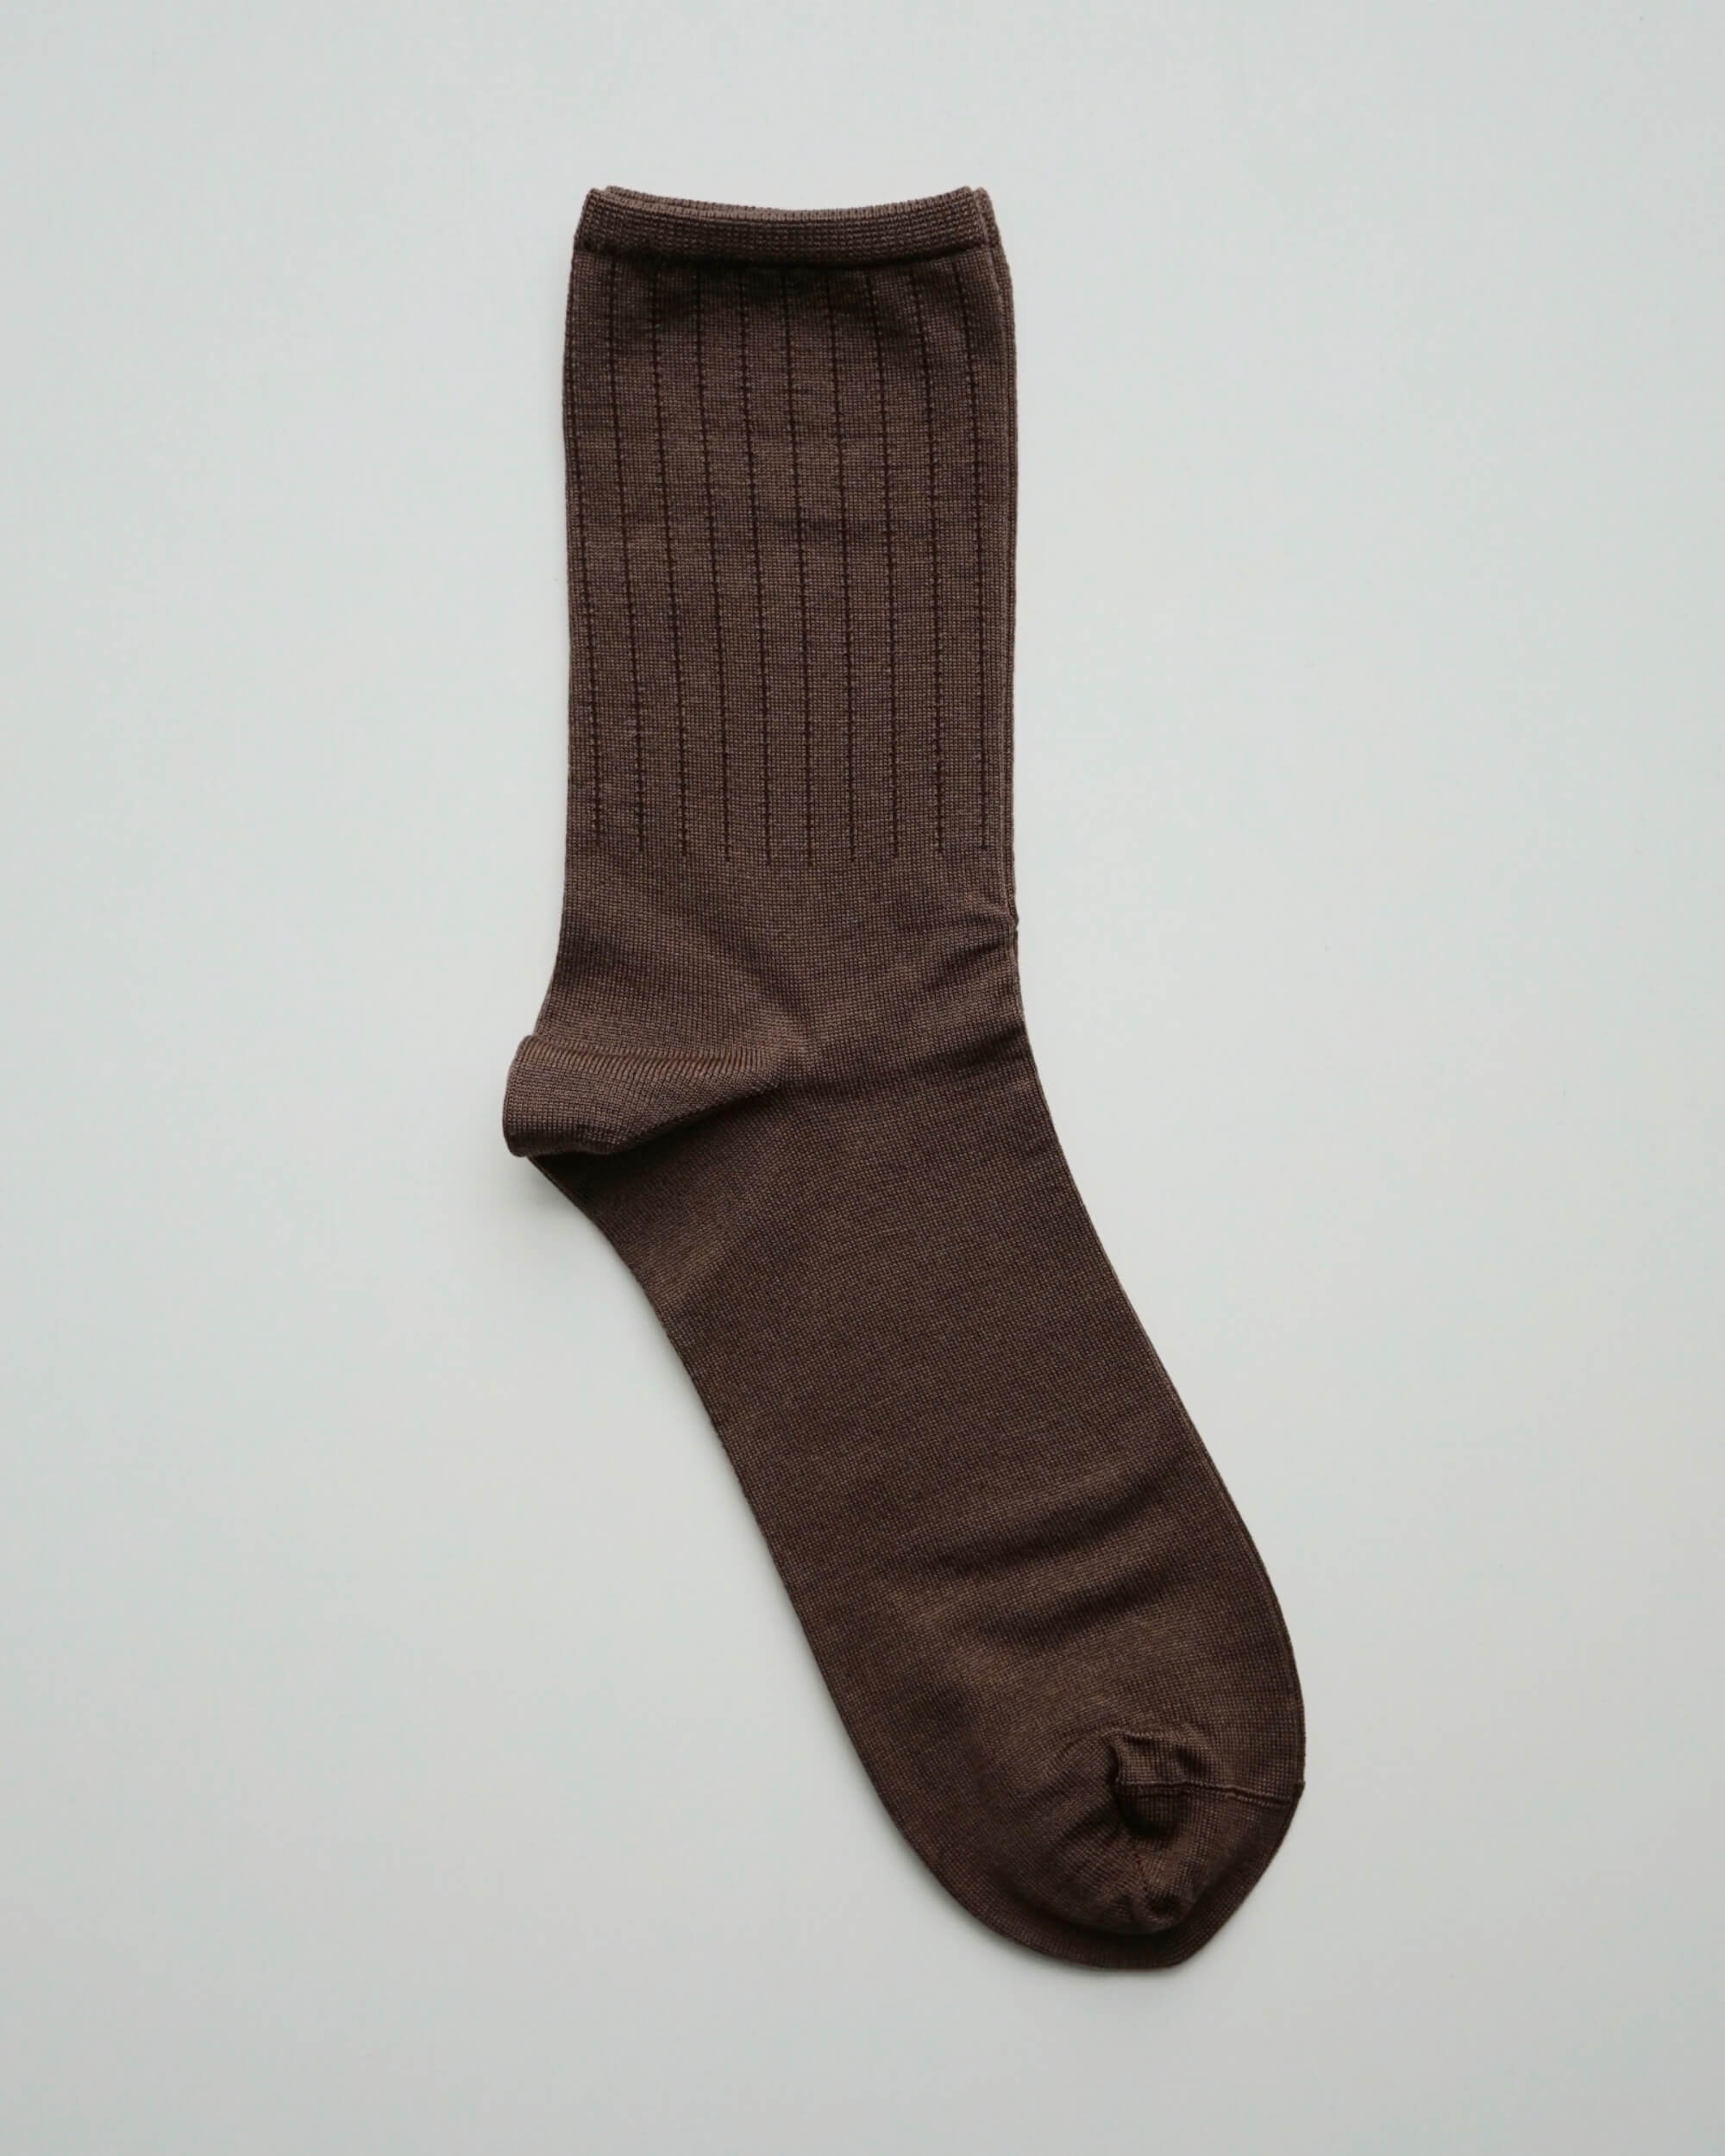 japanese socks